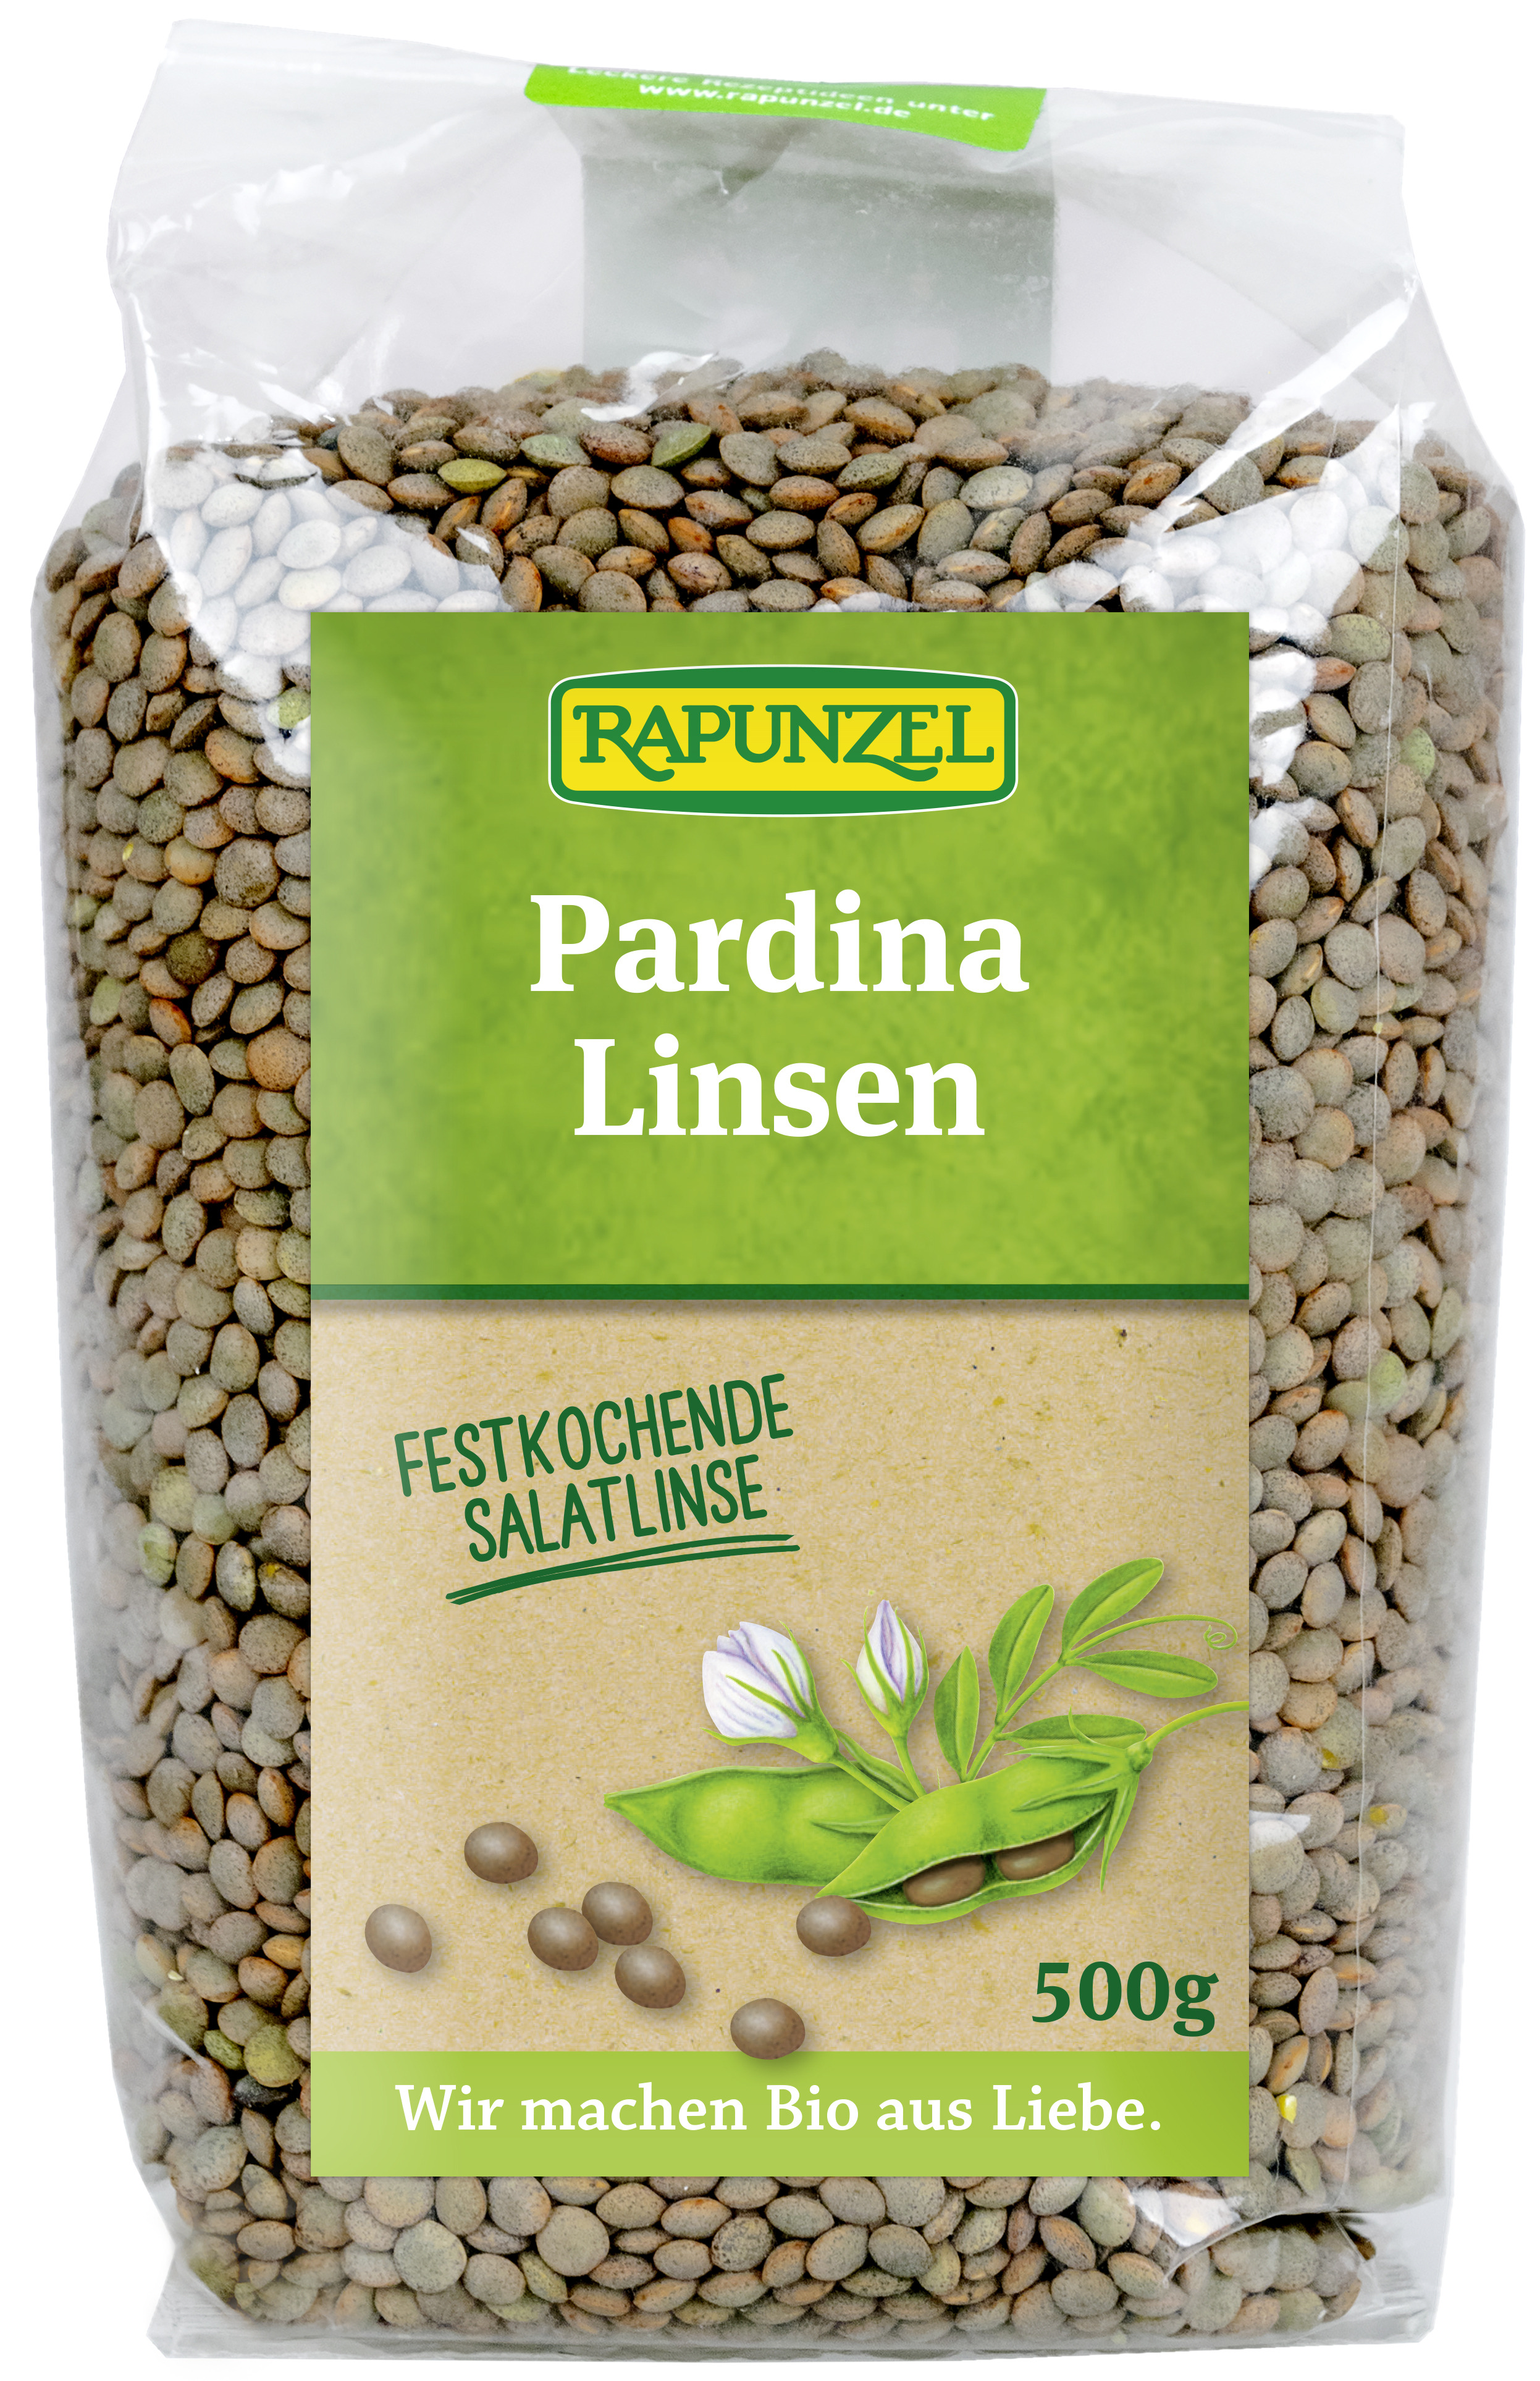 Pardina Linsen, Linsen, Hülsenfrüchte, Produkte